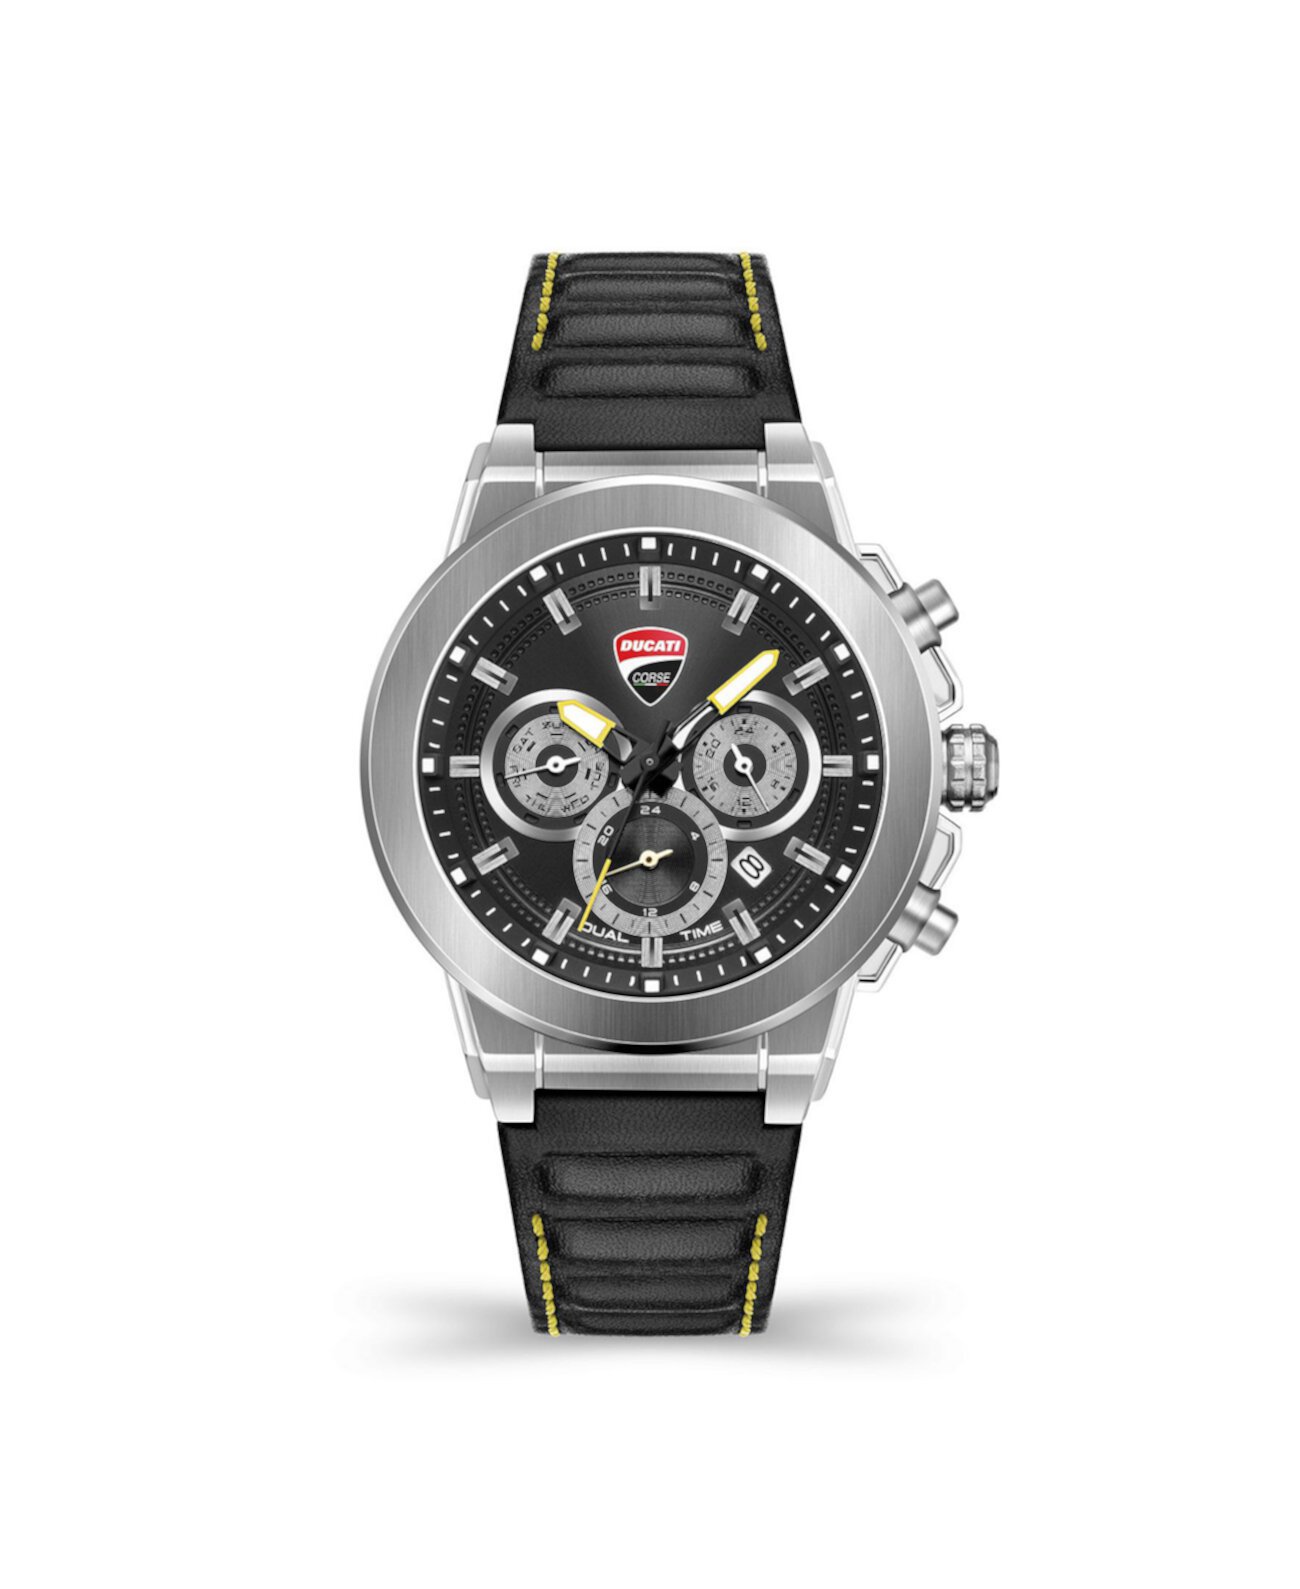 Мужские многофункциональные часы Campione с черным кожаным ремешком 45 мм Ducati Corse